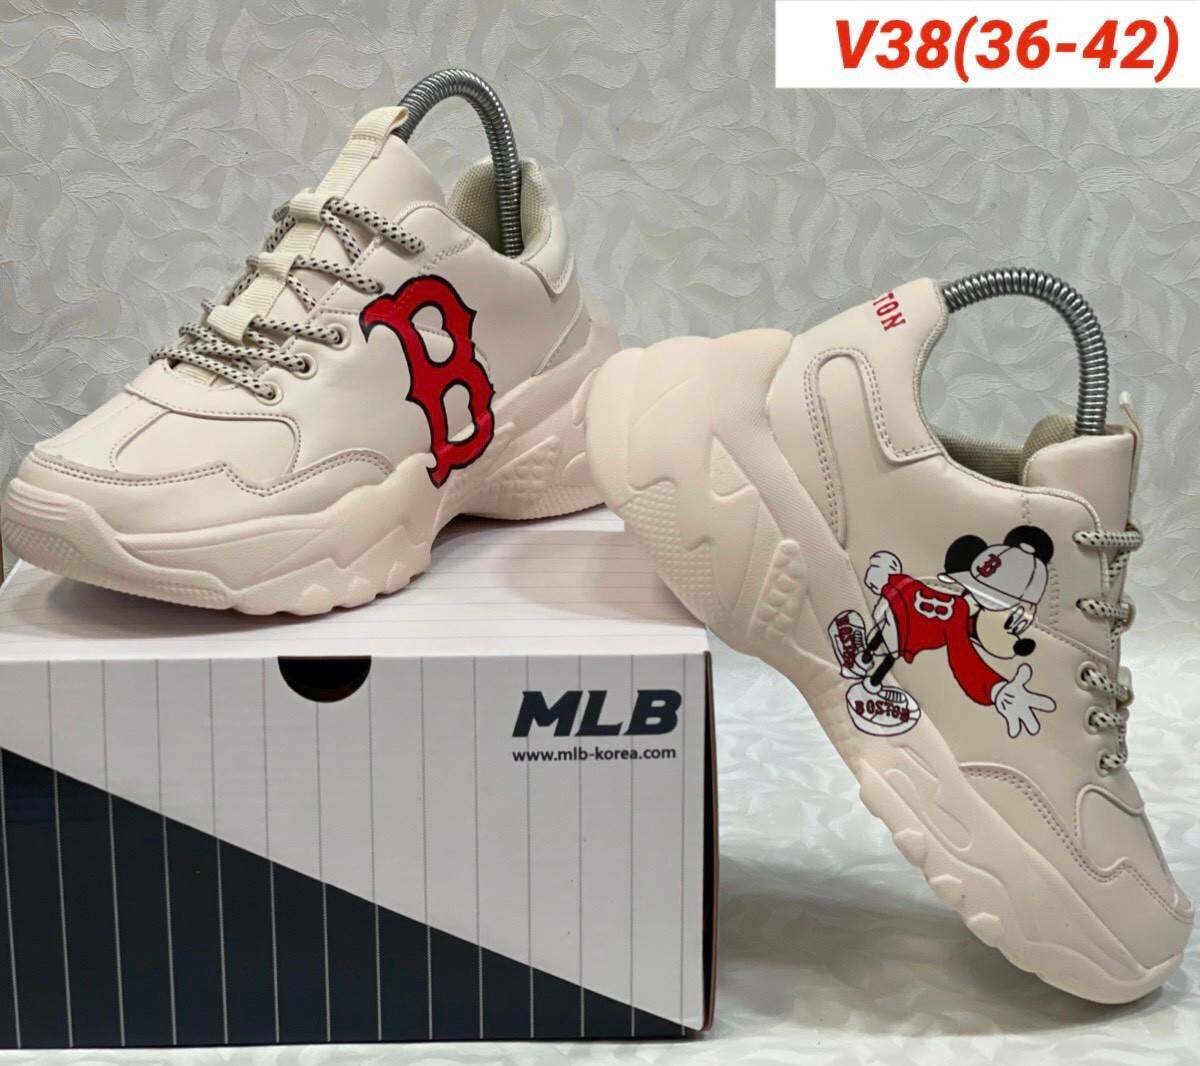 ลดแรง!! NEW.MLB รองเท้าผ้าใบสำหรับผู้หญิง/ผู้ชาย ราคาพิเศษสุดคุ้ม!! (Mungme shop)